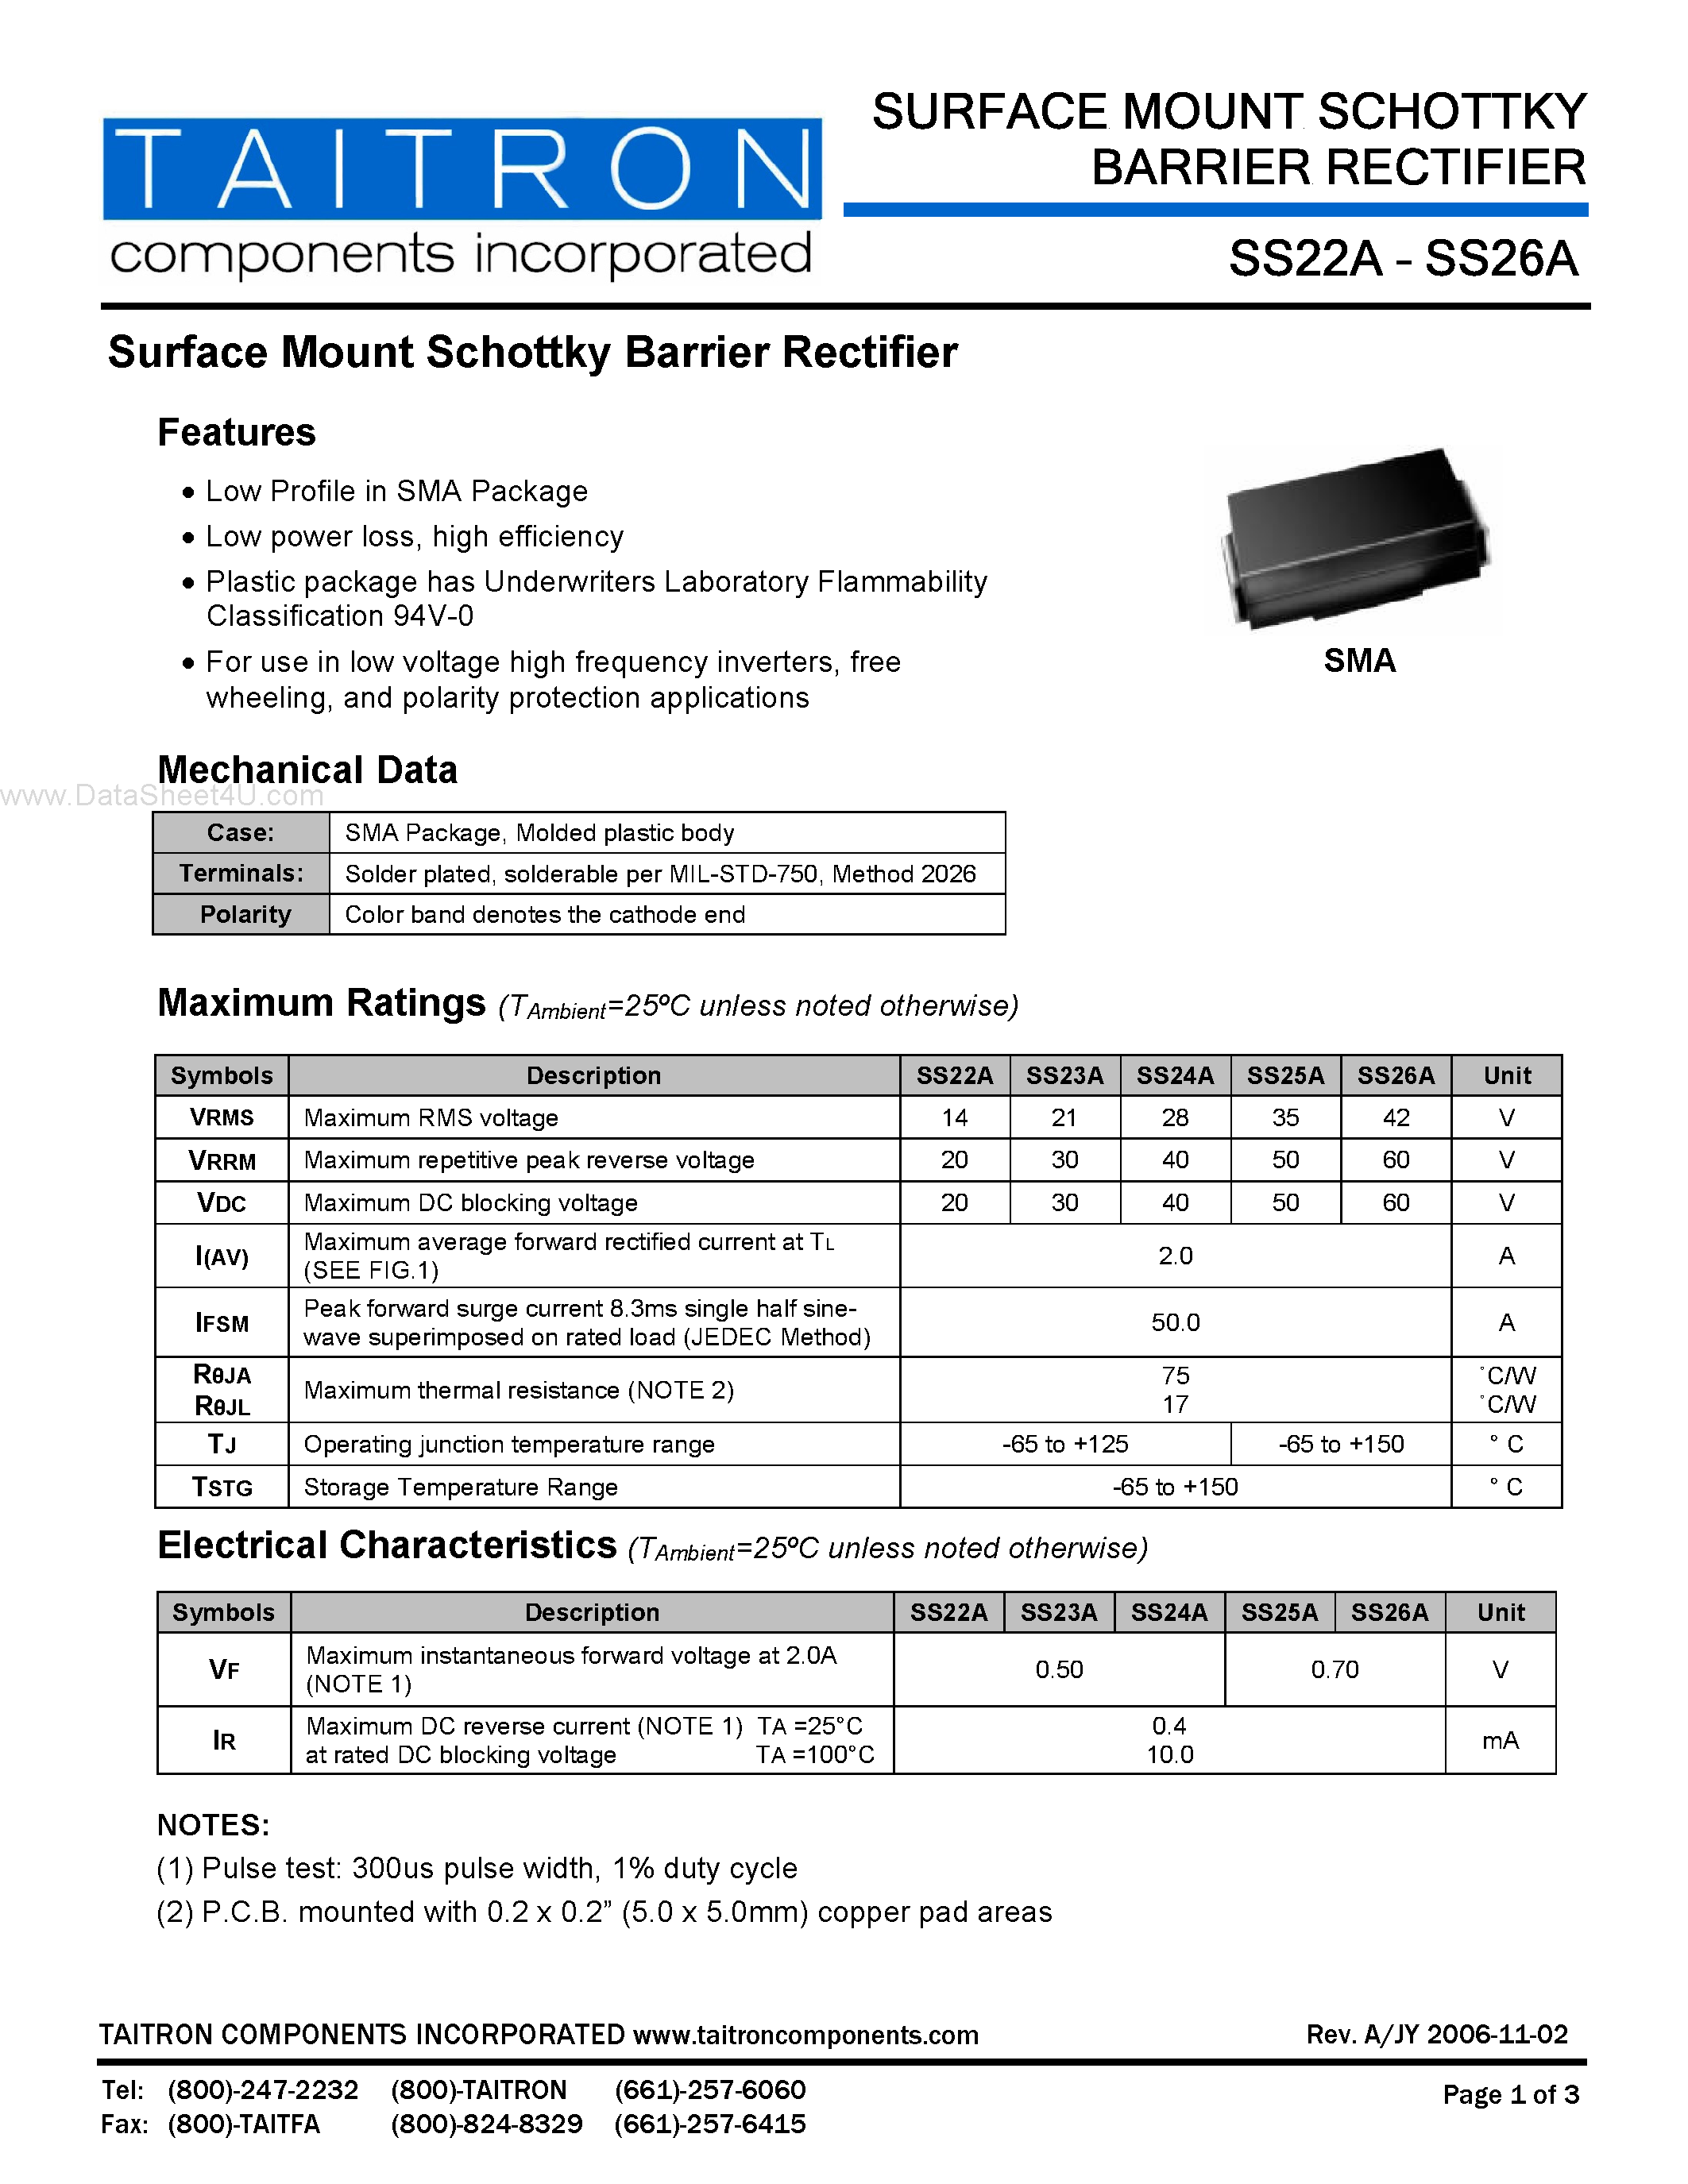 Datasheet SS22A - (SS22A - SS26A) Surface Mount Schottky Barrier Rectifier page 1